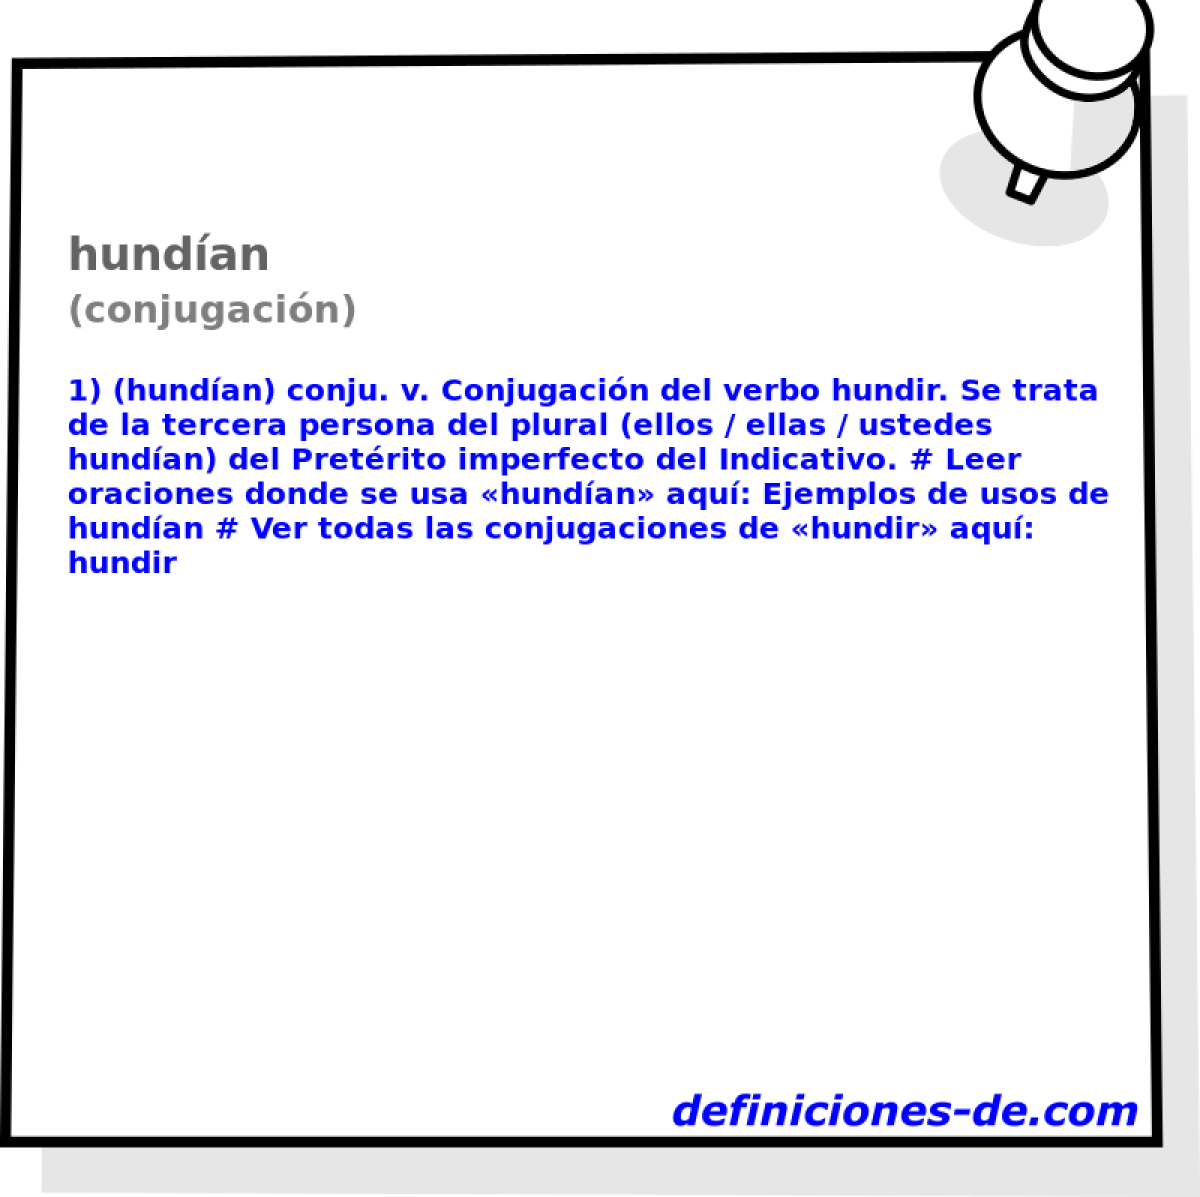 hundan (conjugacin)